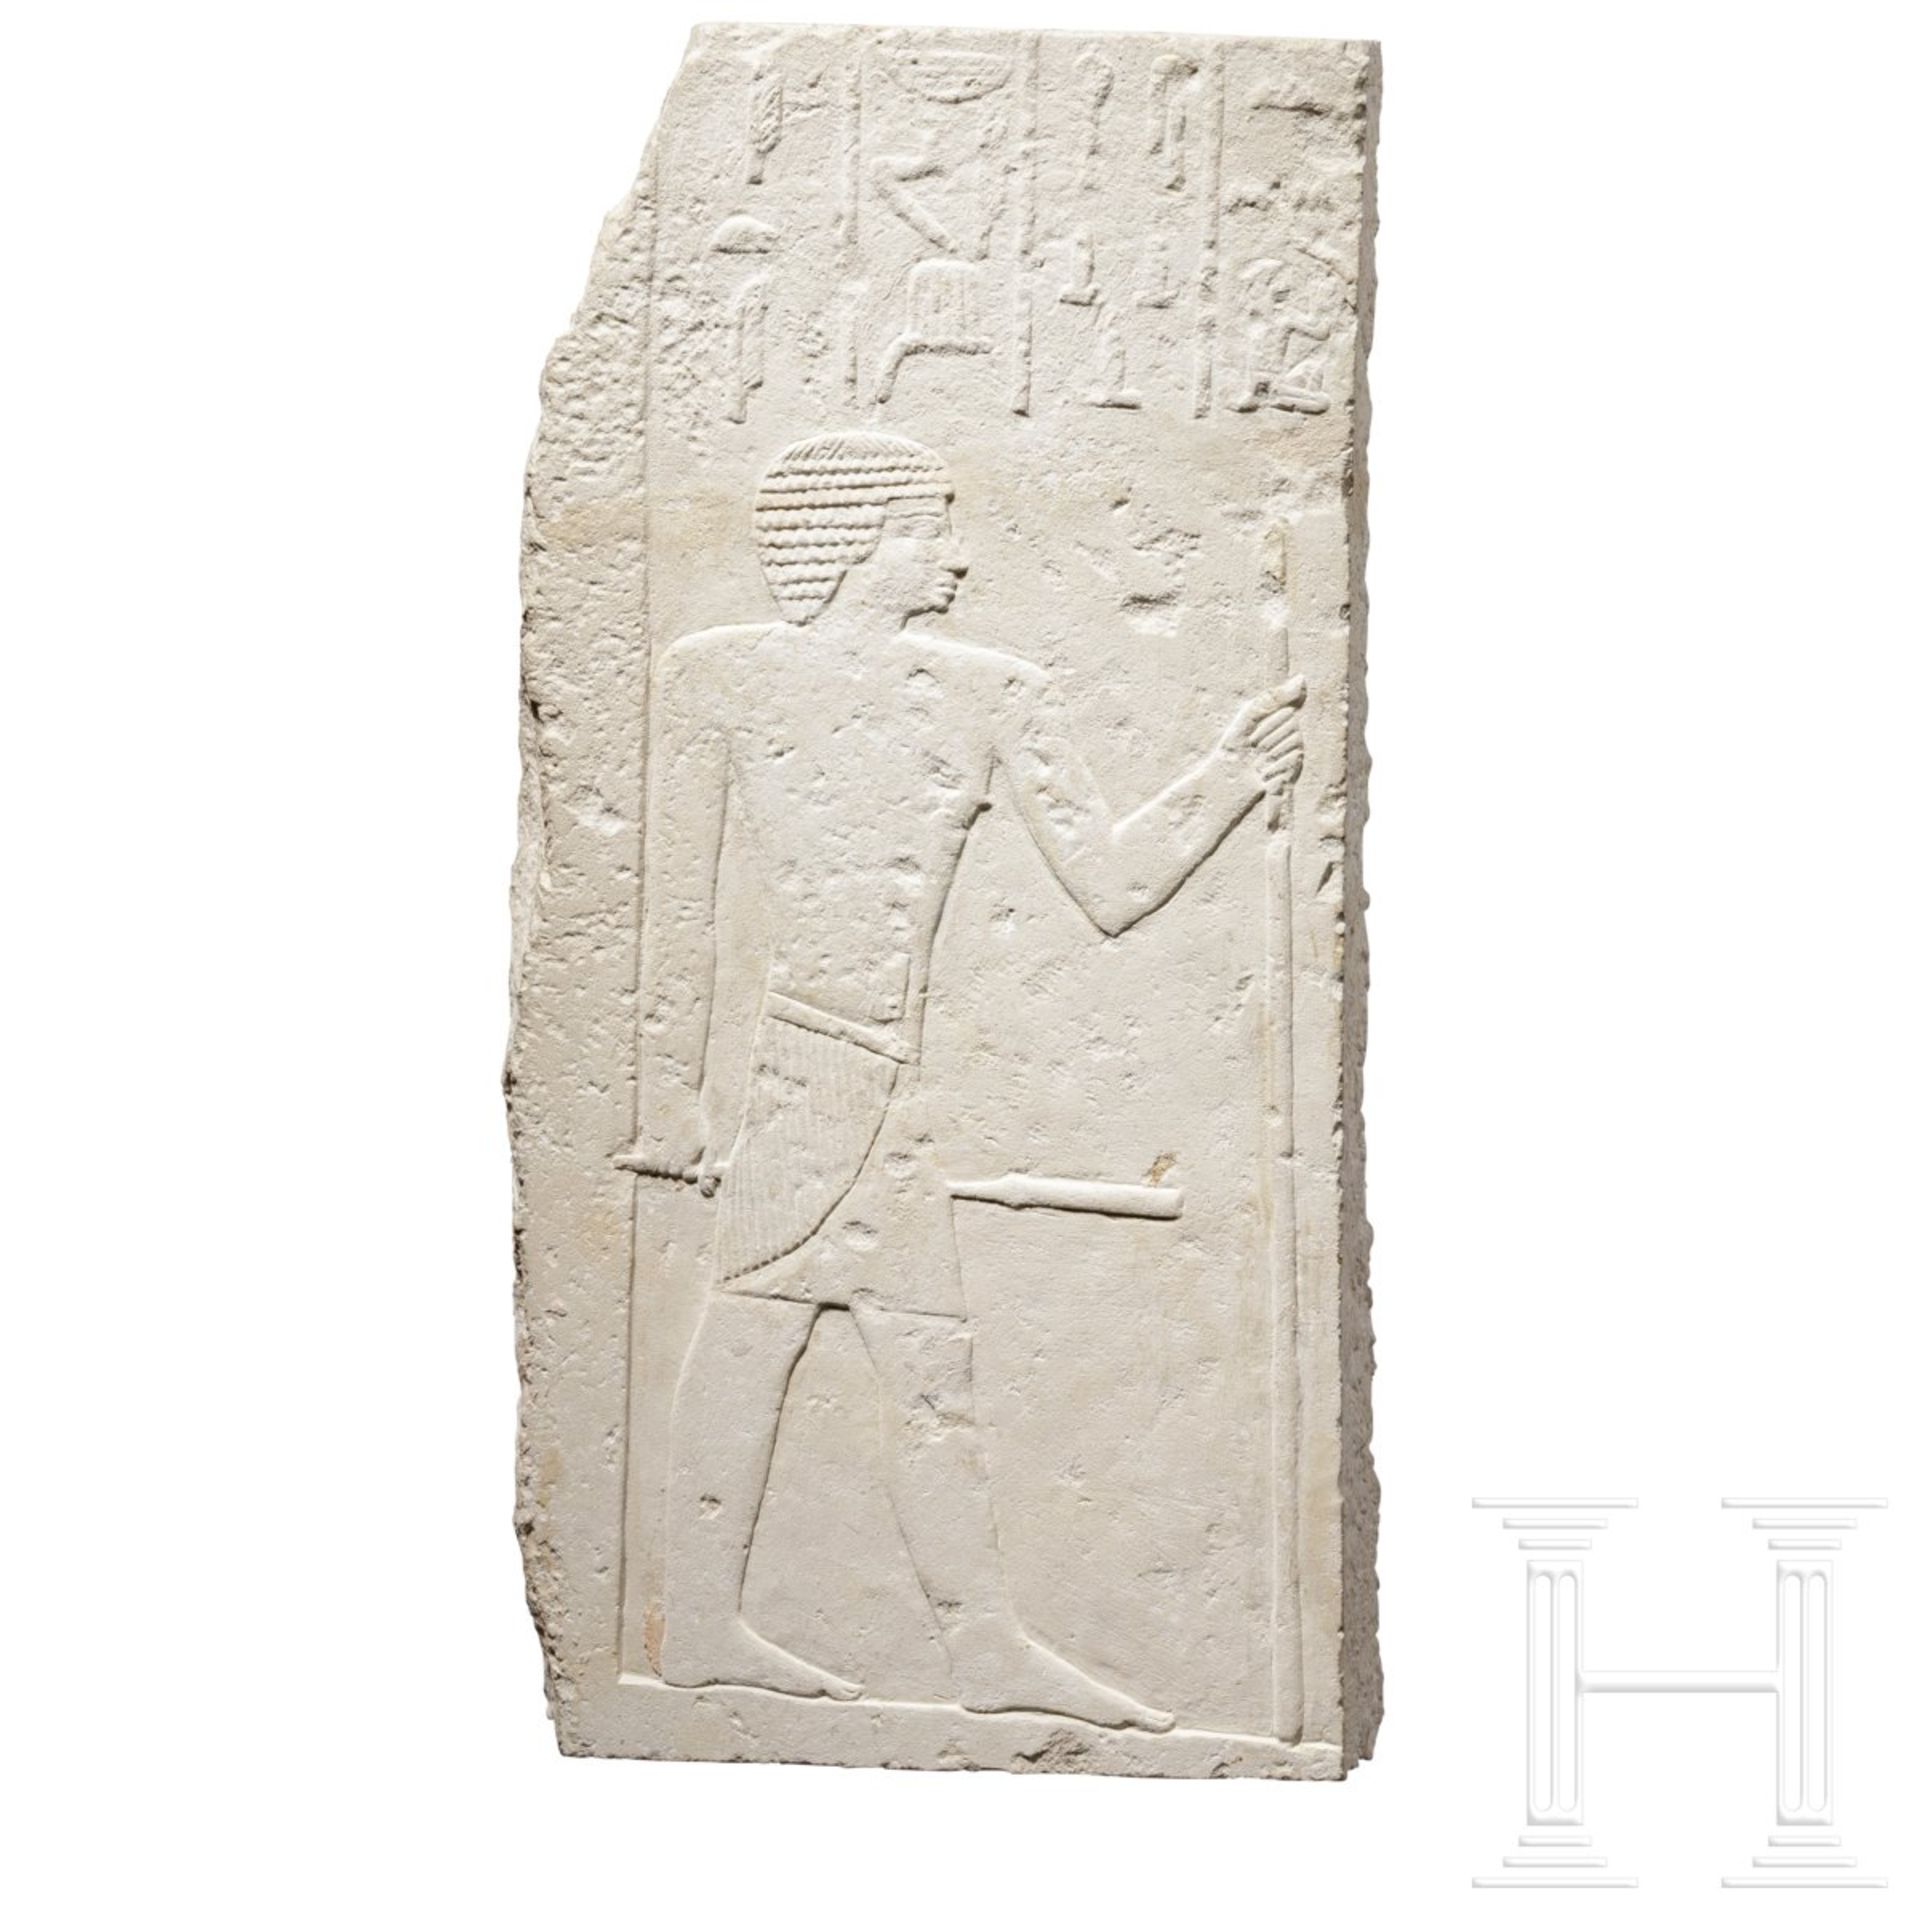 Eindrucksvolles Kalksteinrelief des Iti, Ägypten, Altes Reich, 5. - 6. Dynastie, 2498-2181 v. Chr. - Bild 2 aus 7